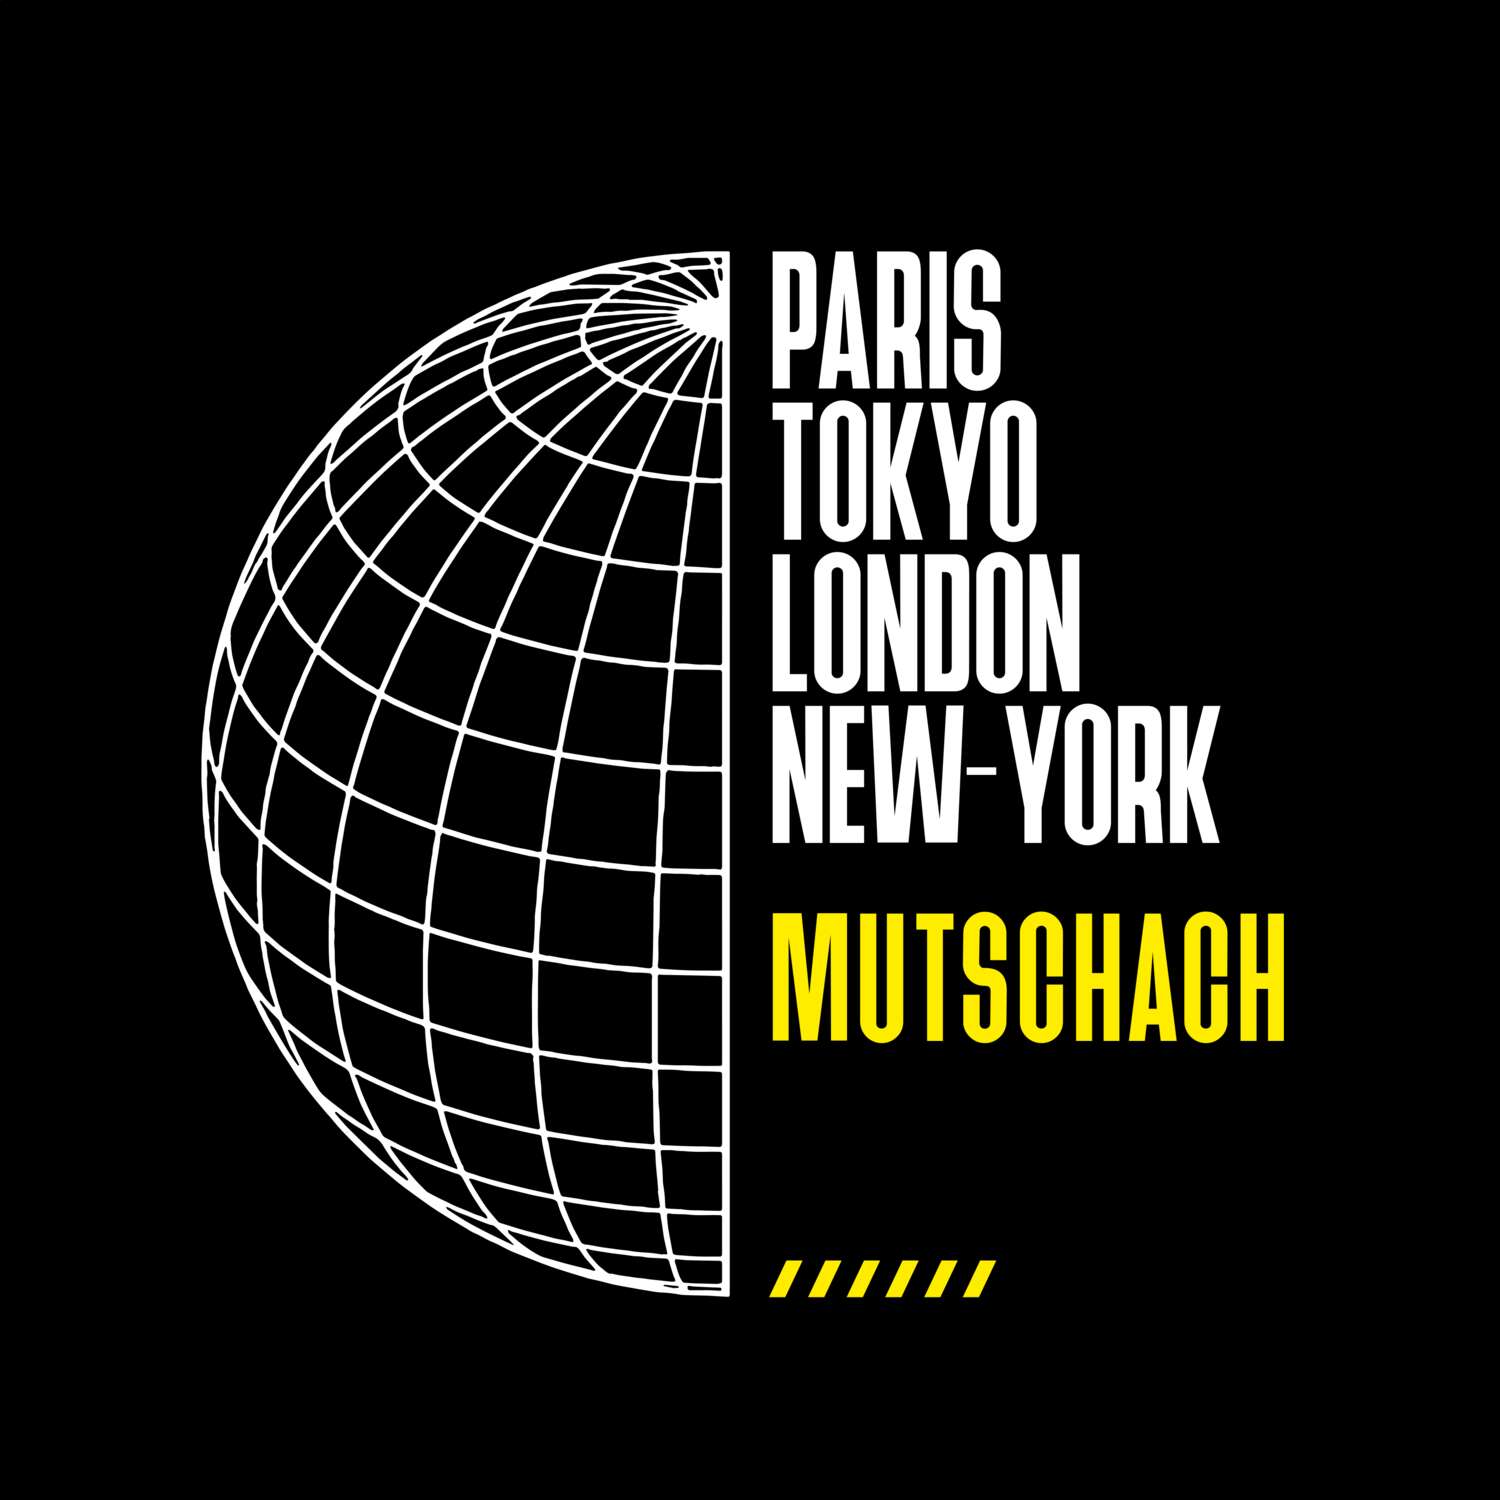 Mutschach T-Shirt »Paris Tokyo London«